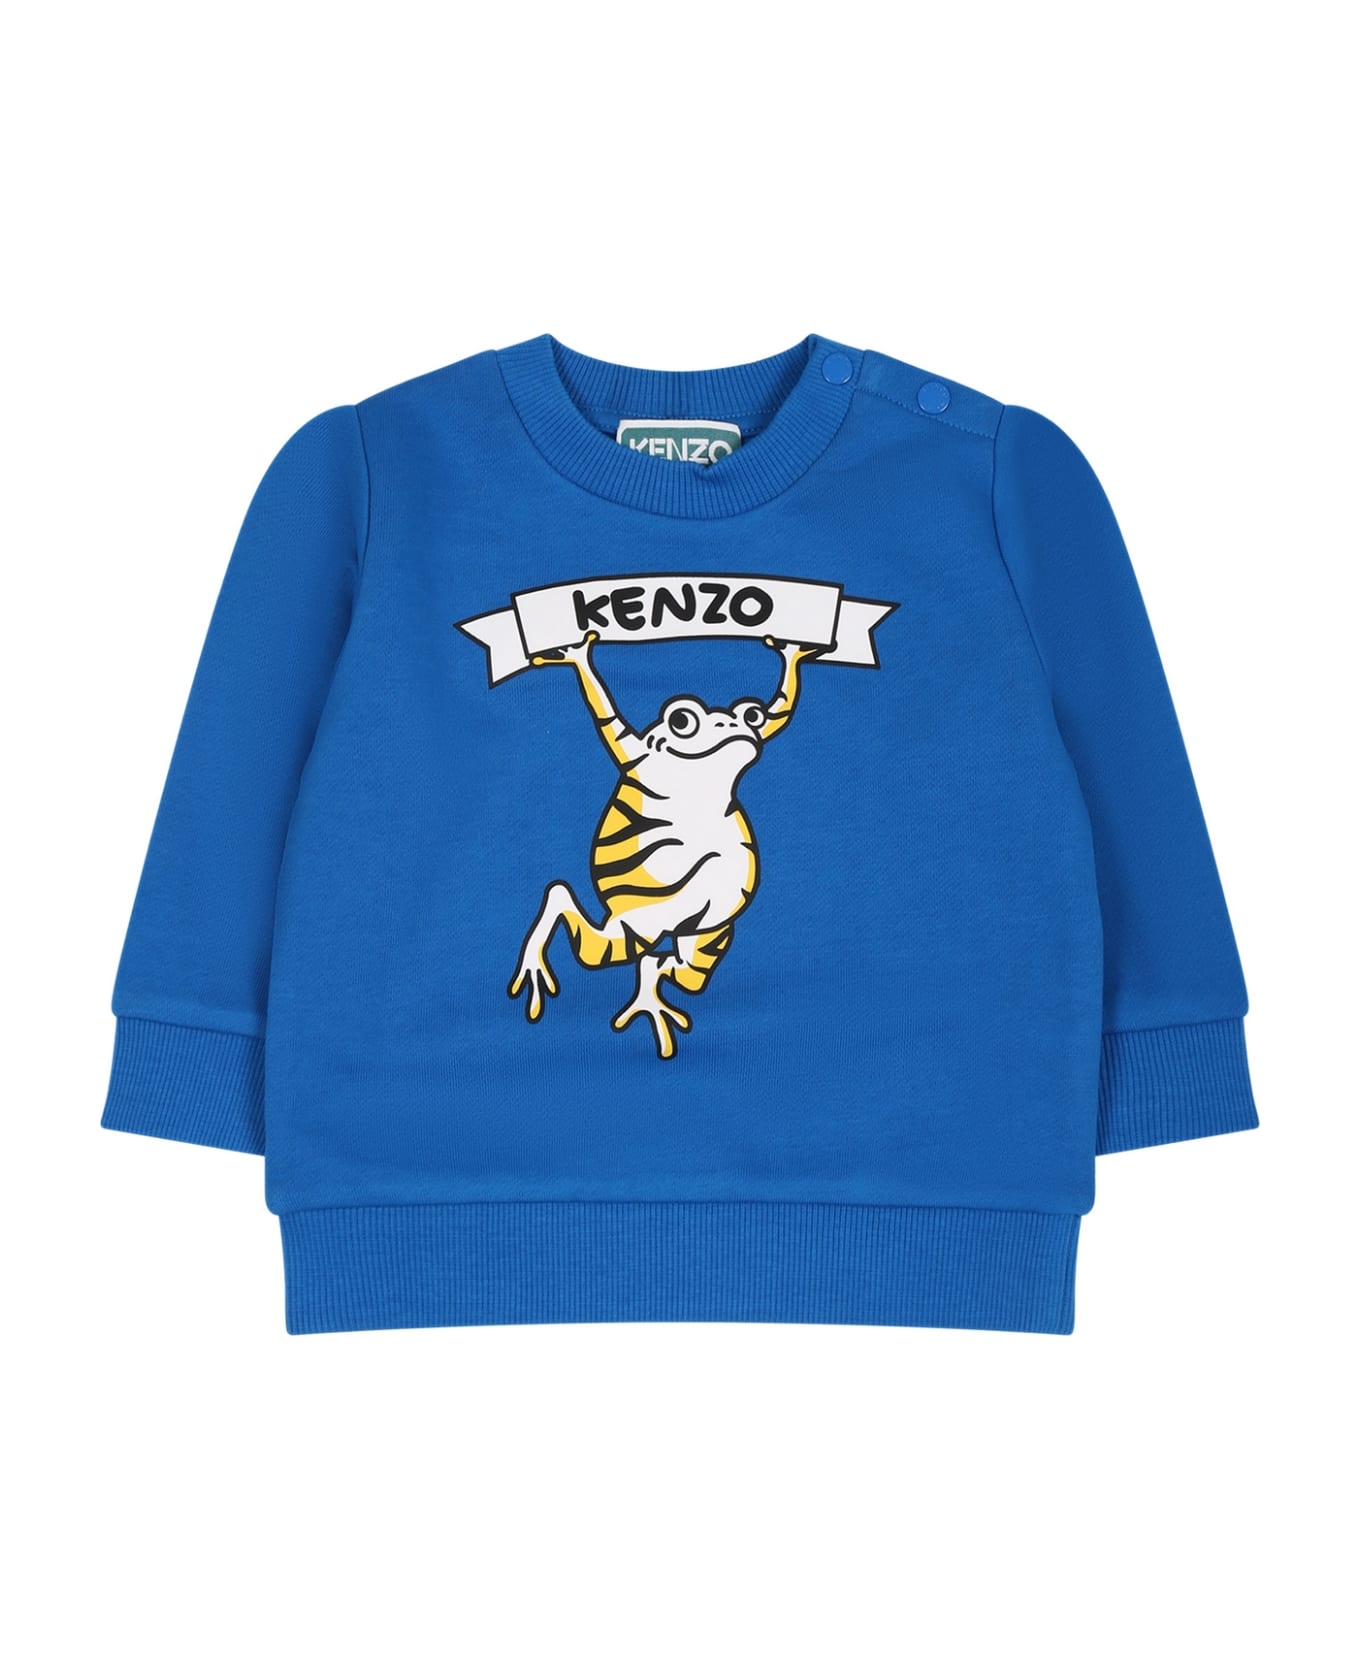 Kenzo Kids Light Blue T-shirt For Baby Boy With Logo And Print - Light Blue ニットウェア＆スウェットシャツ